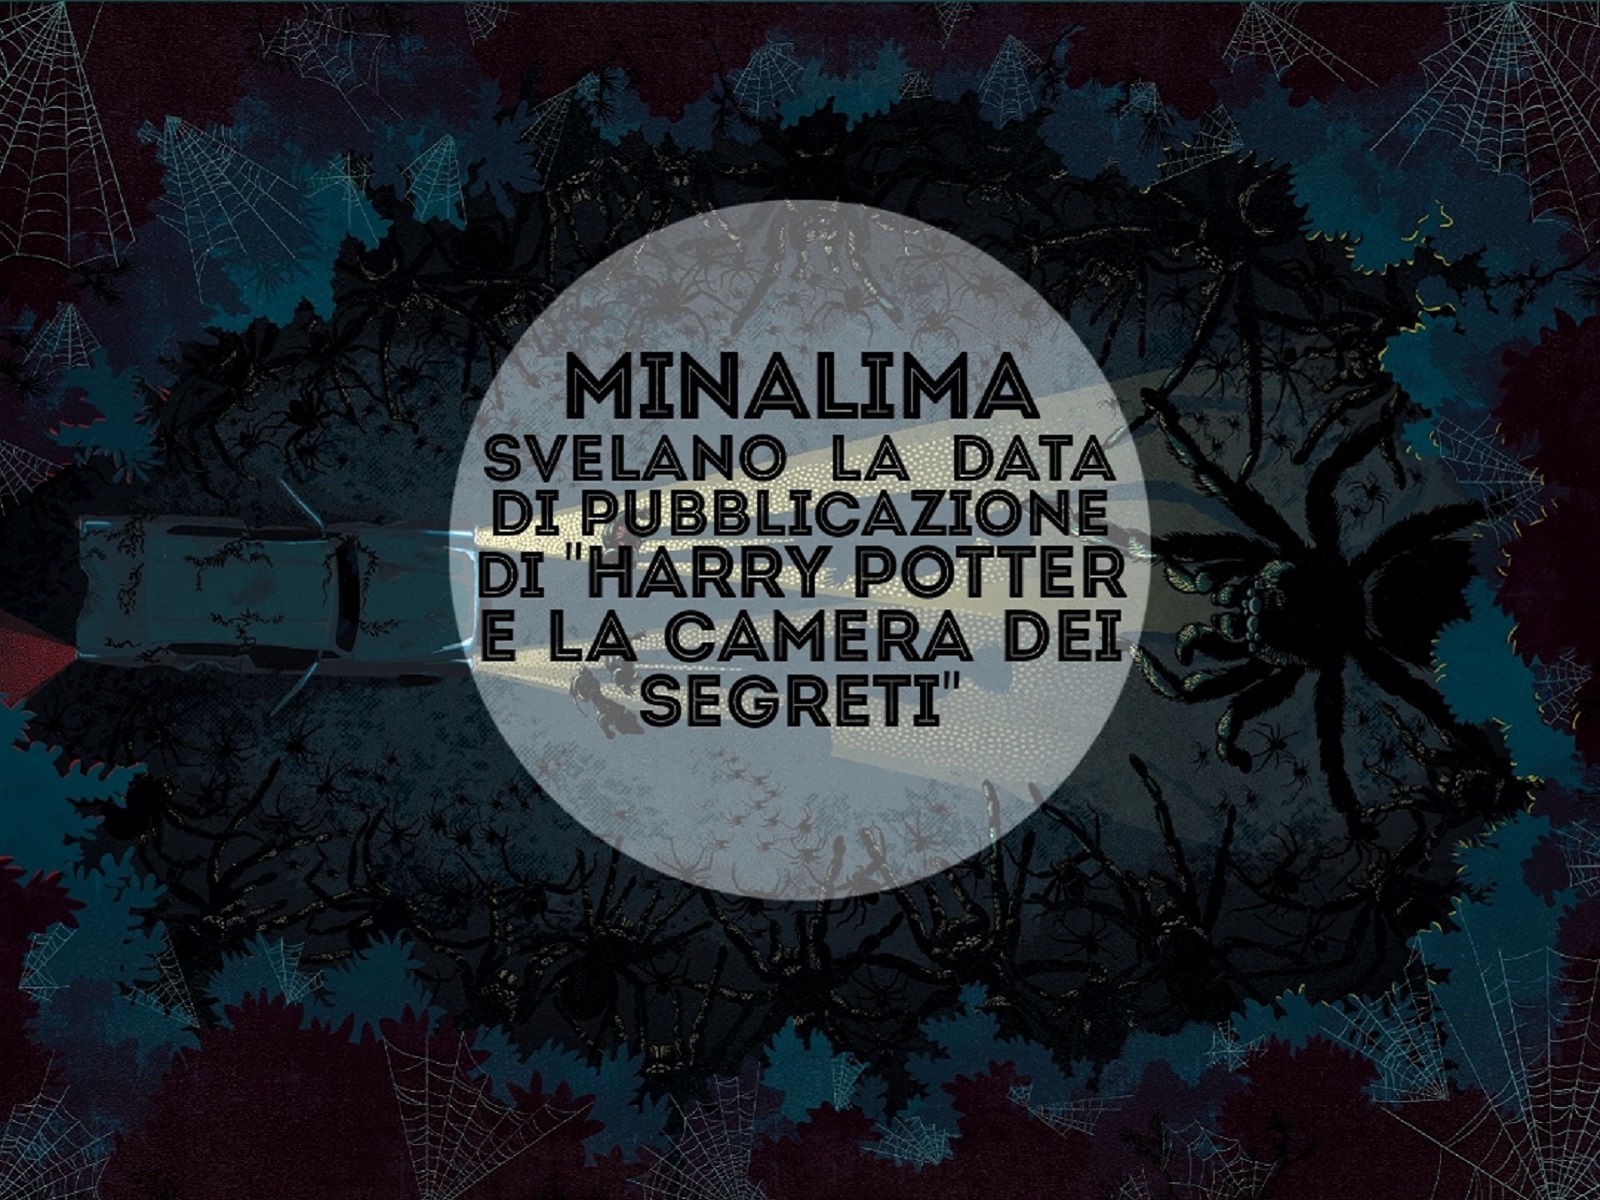 MinaLima svelano la data di pubblicazione di "Harry Potter e la Camera dei Segreti"